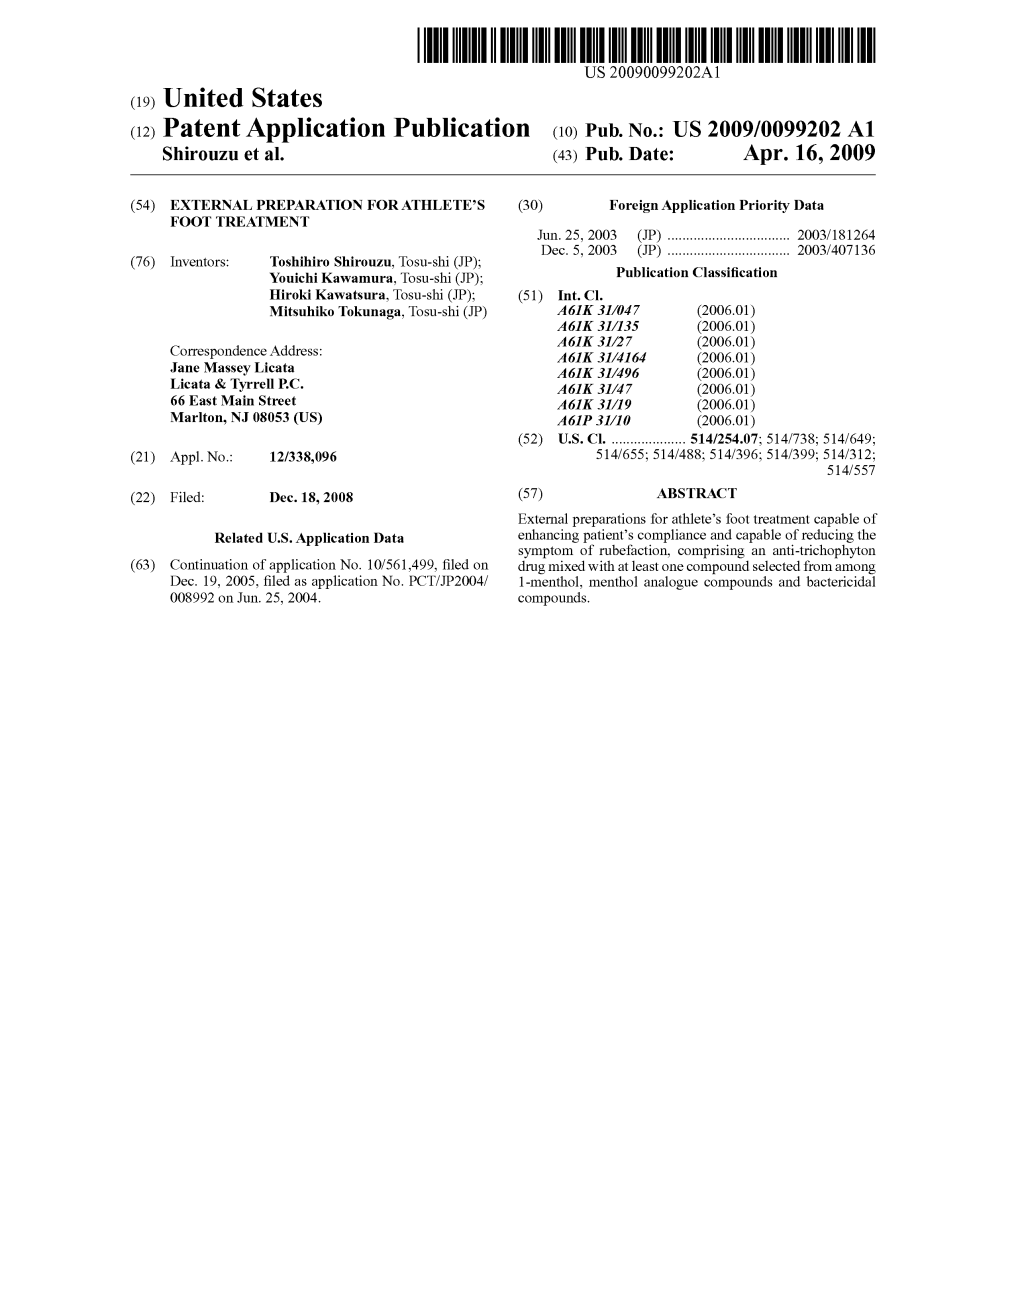 (12) Patent Application Publication (10) Pub. No.: US 2009/0099202 A1 Shirouzu Et Al